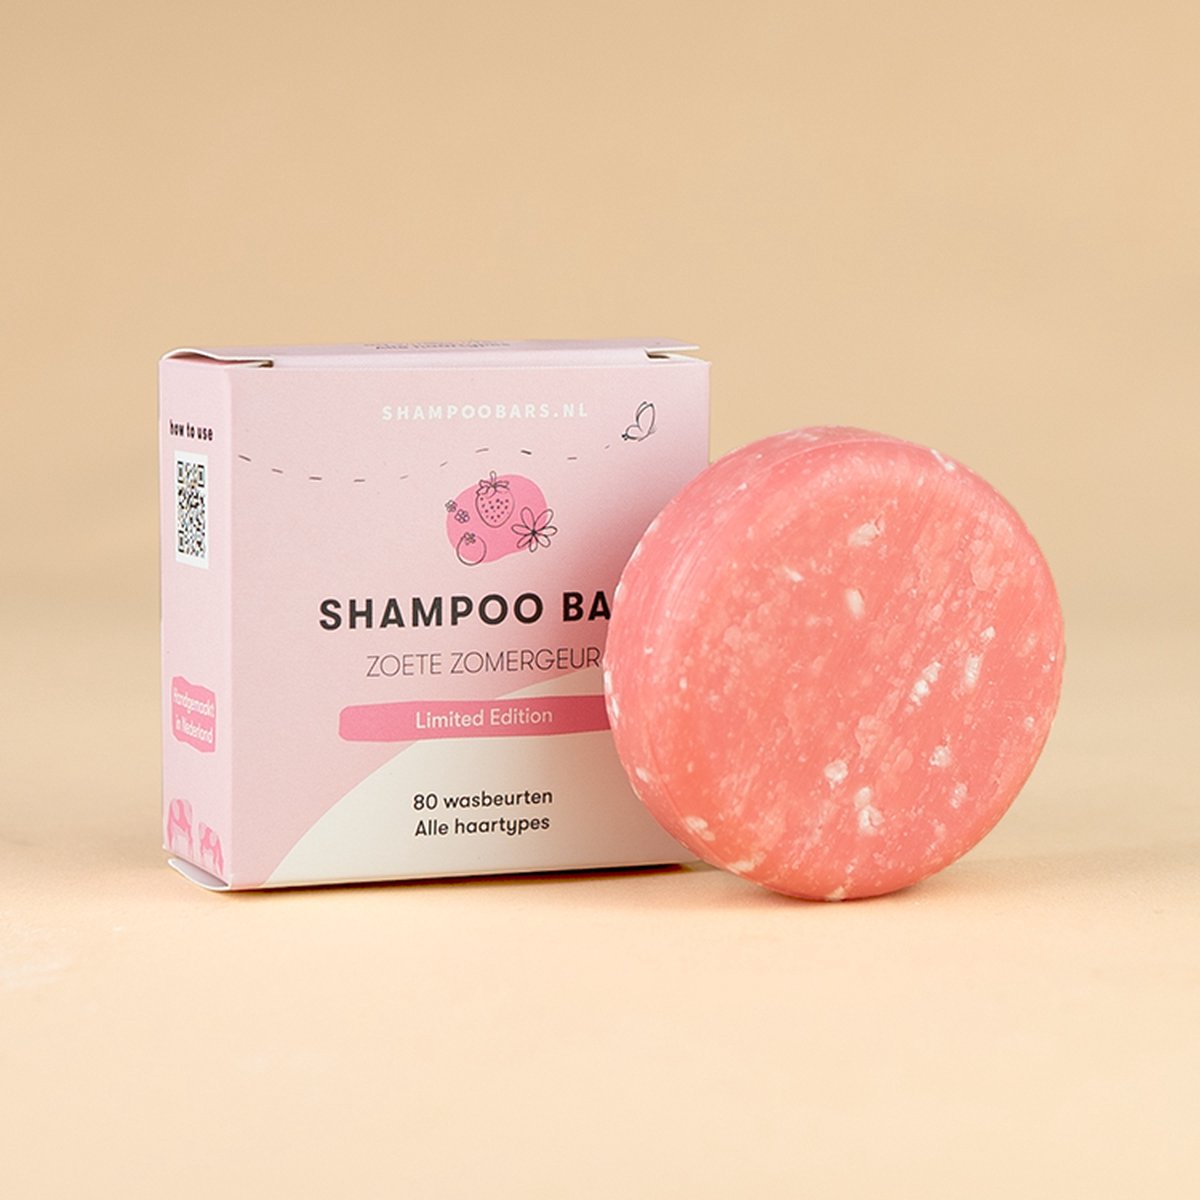 Shampoo Bar Zoete Zomergeur | Handgemaakt in Nederland | Plasticvrij | 100% biologisch afbreekbare verpakking